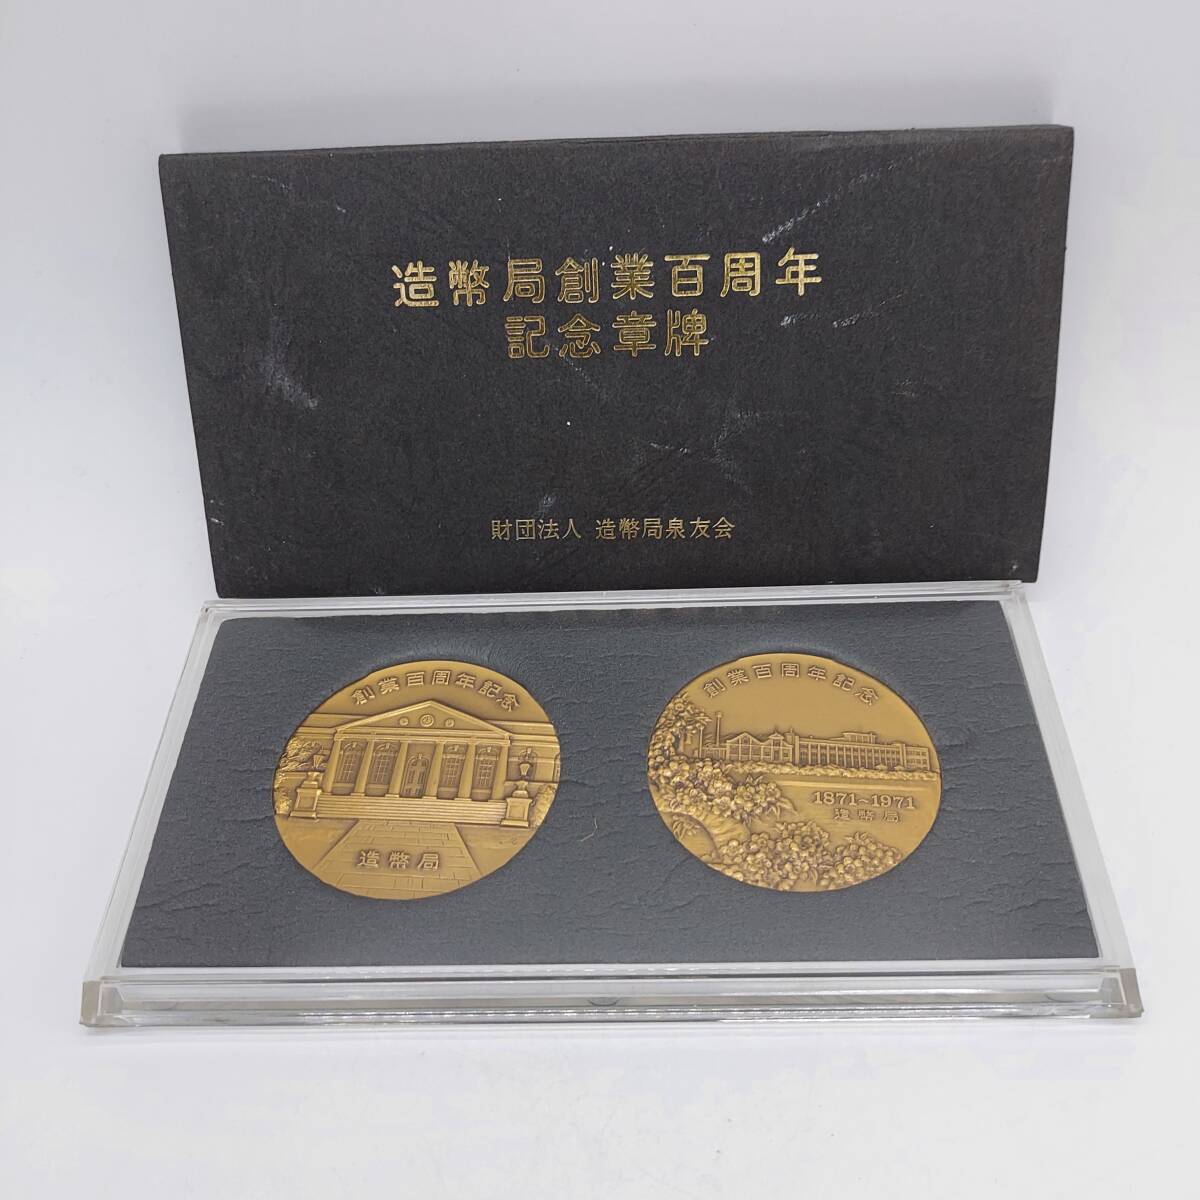 【6268】造幣局 銅メダル 記念メダル 造幣局創業百周年記念章牌 の画像1